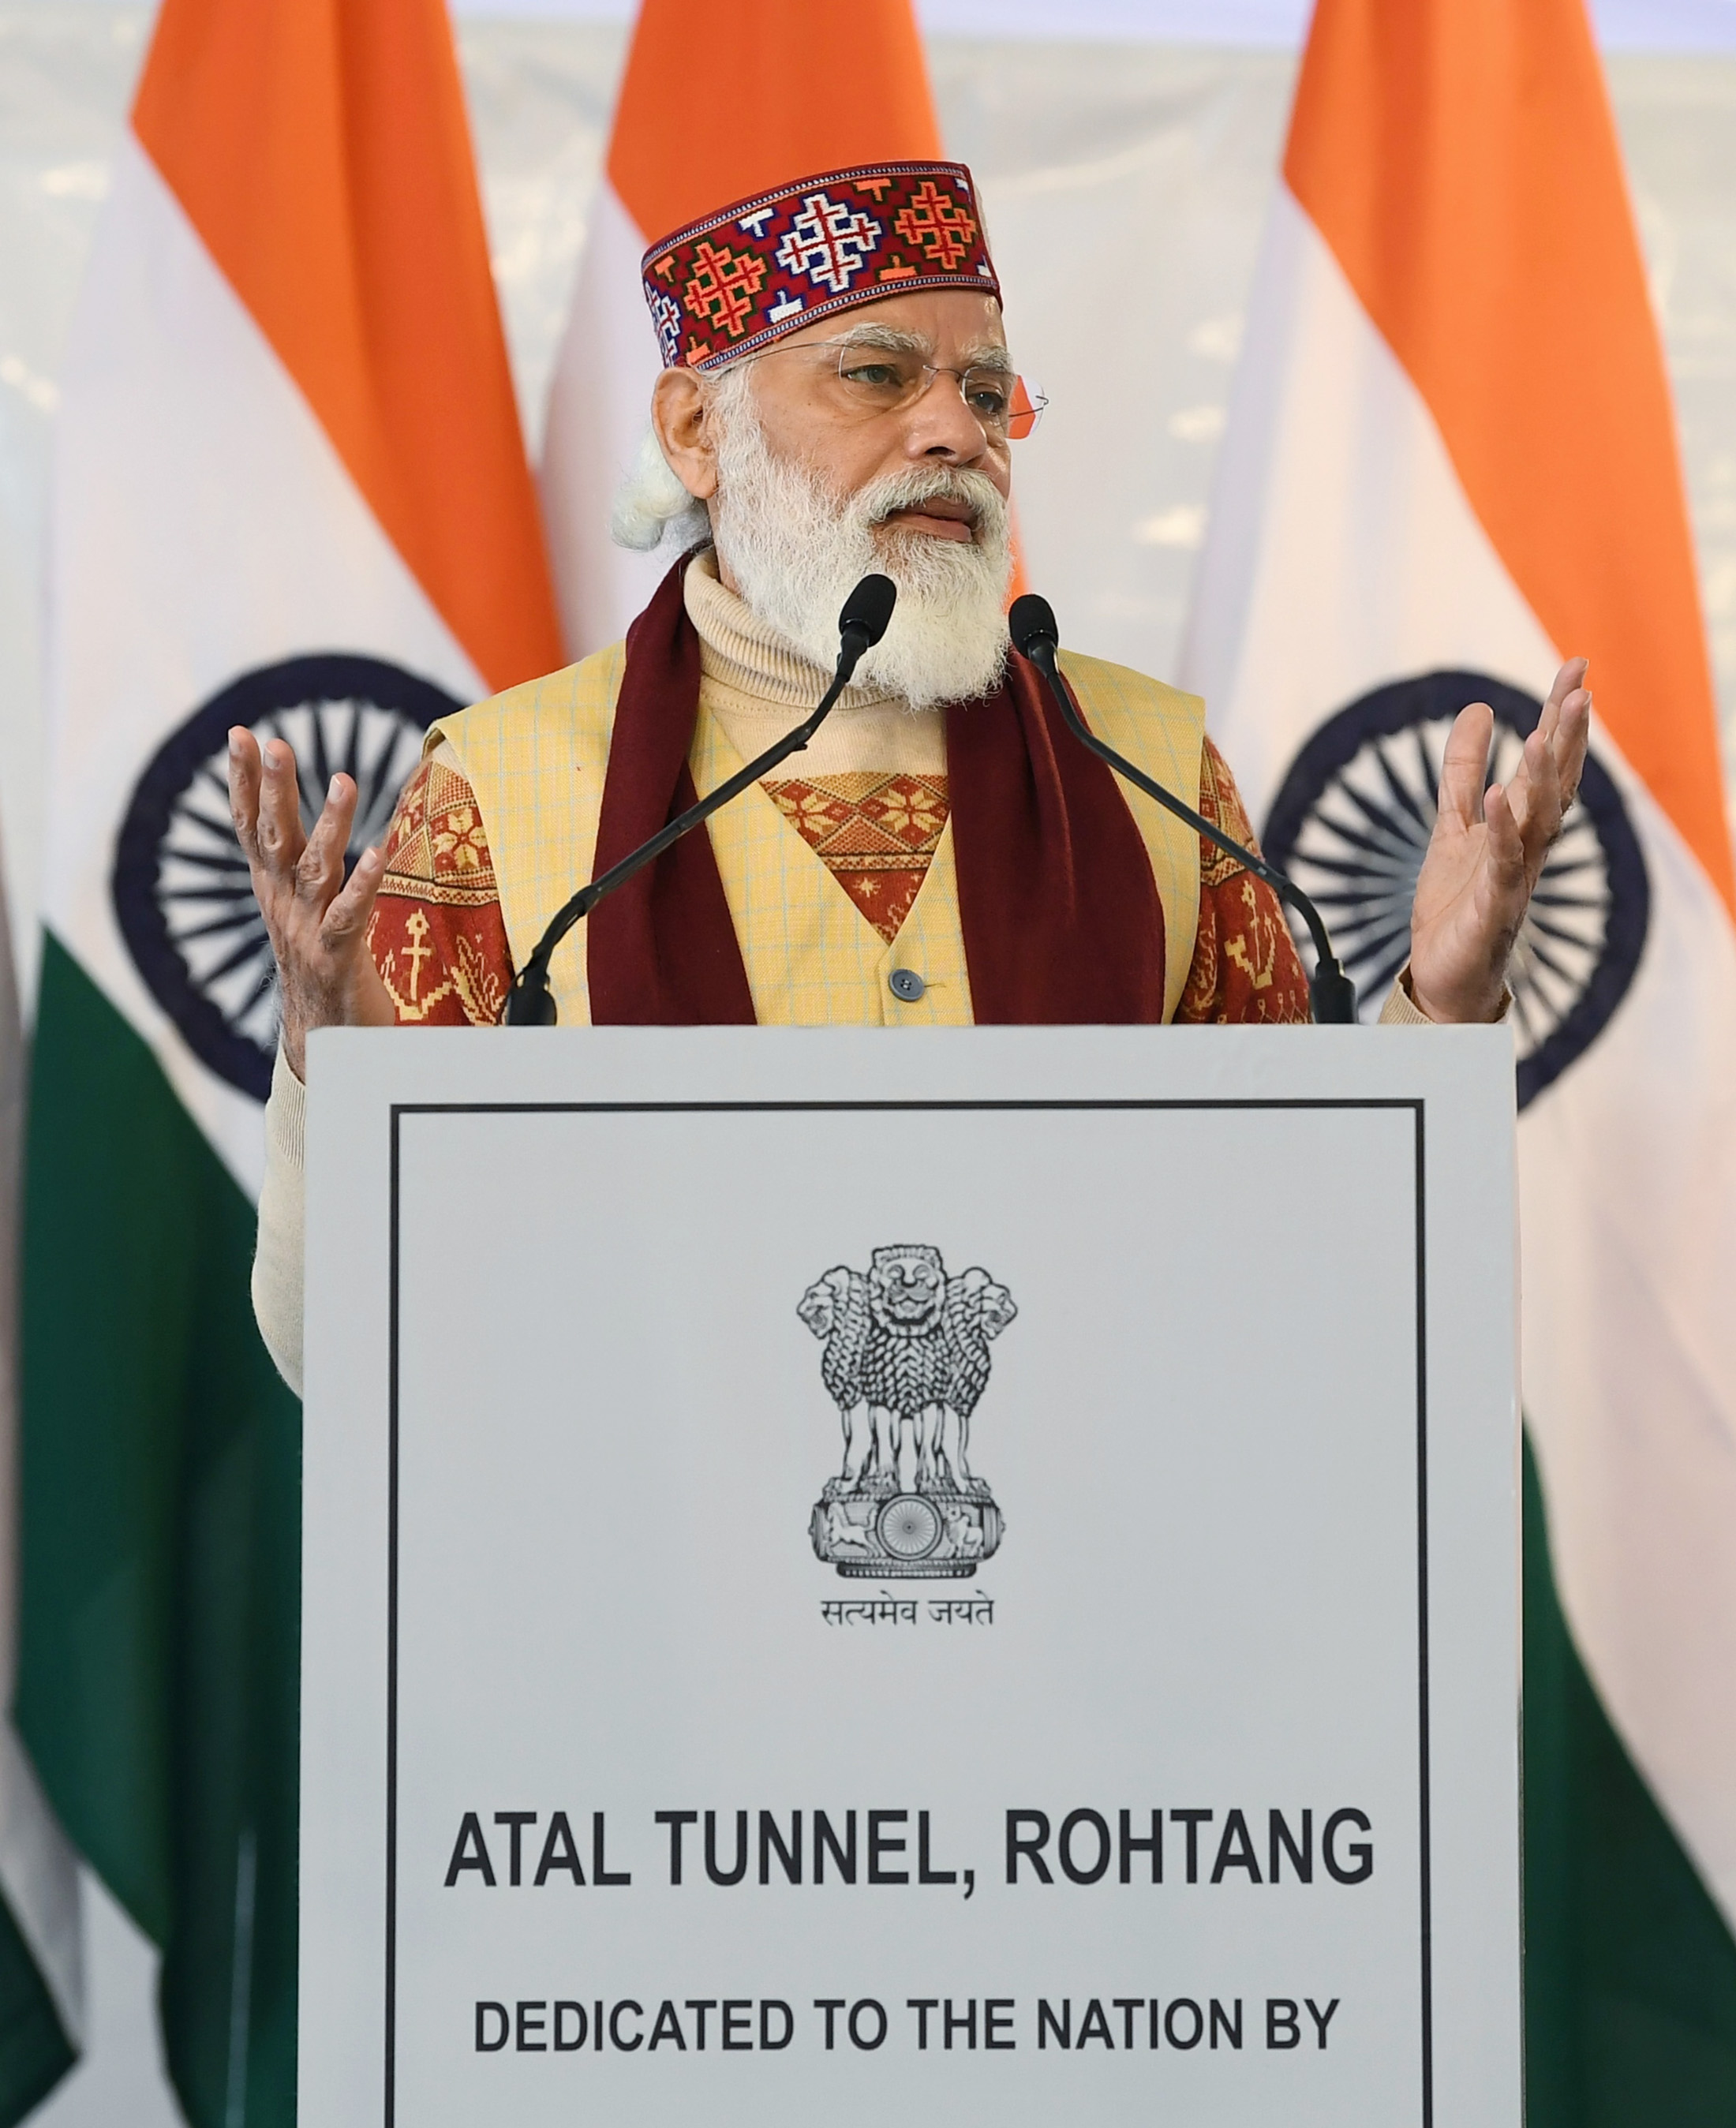 अटल टनल से हिमाचल प्रदेश, जम्‍मू-कश्‍मीर, लेह और लद्दाख सशक्‍त होंगे : प्रधानमंत्री